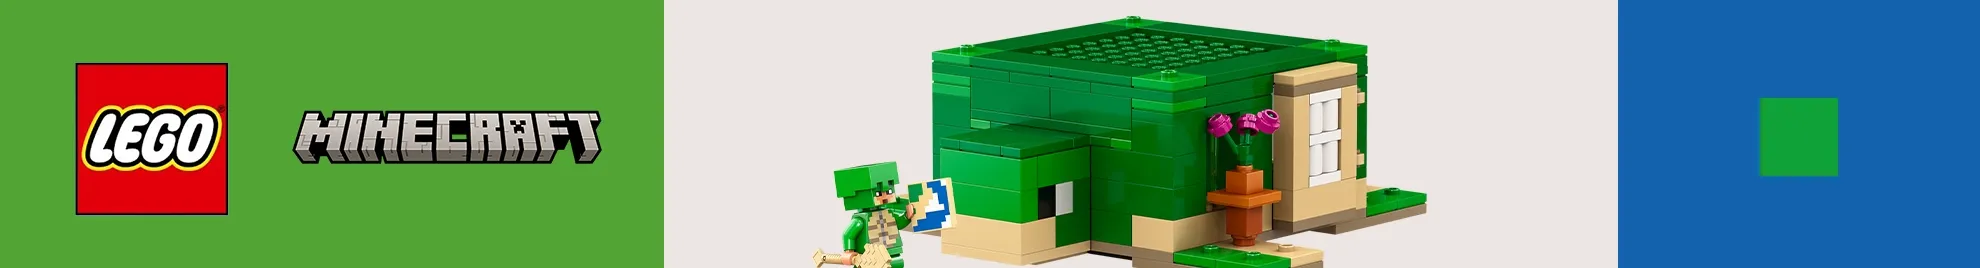 LEGO Minecraft banner